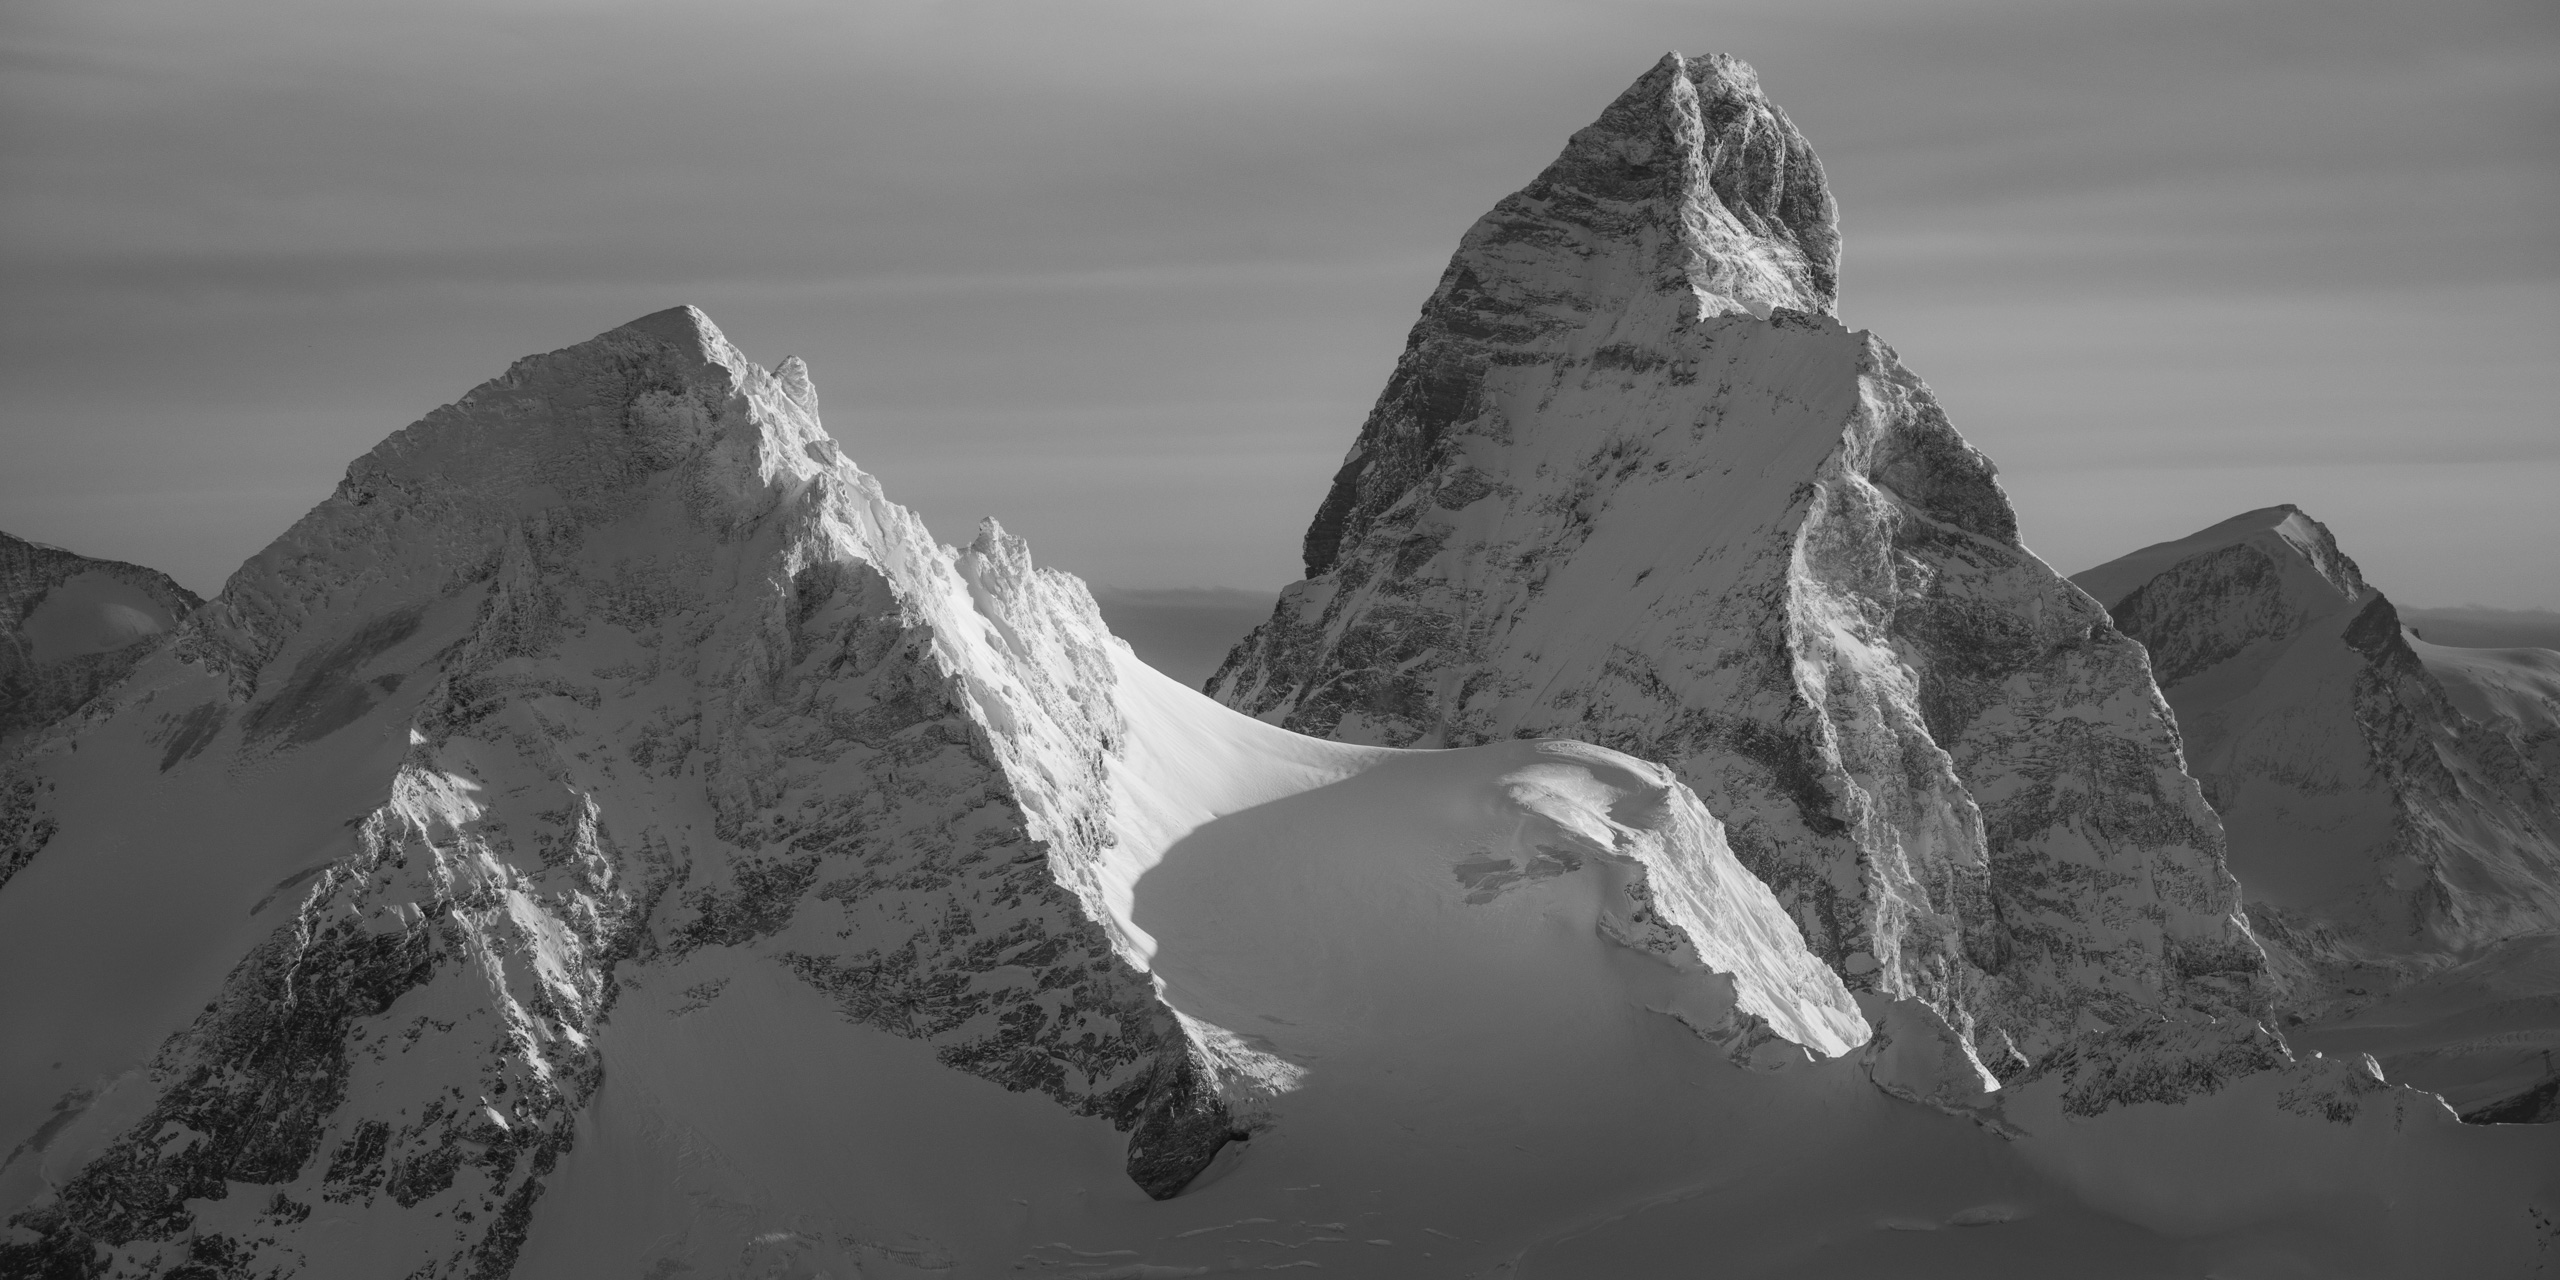 Vue panoramique d'un paysage de montagne suisse en noir et blanc Hérens - Cervin - Strahlhorn sous le soleil